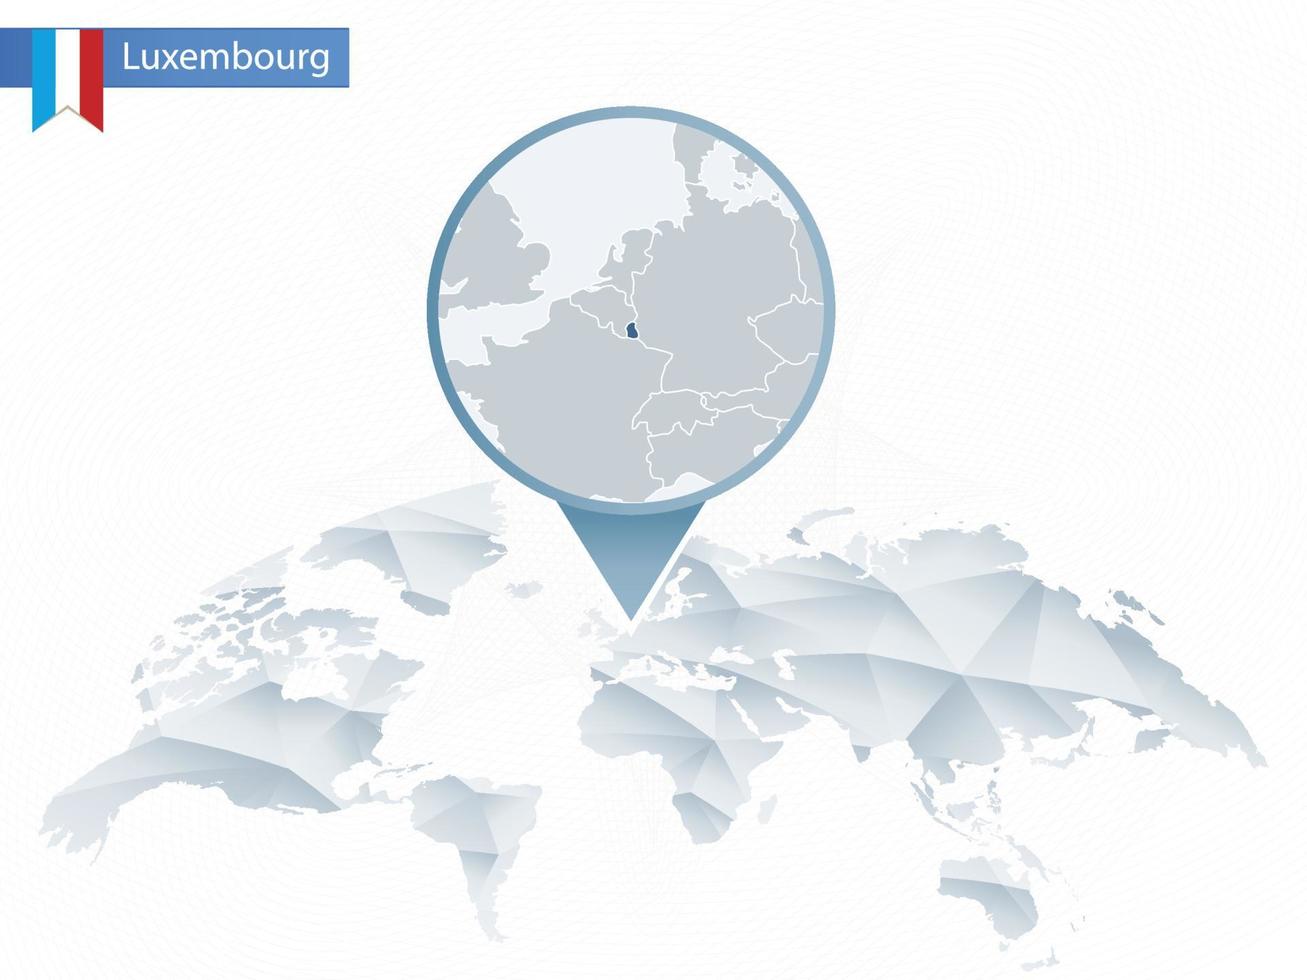 mapa del mundo redondeado abstracto con mapa de luxemburgo detallado anclado. vector